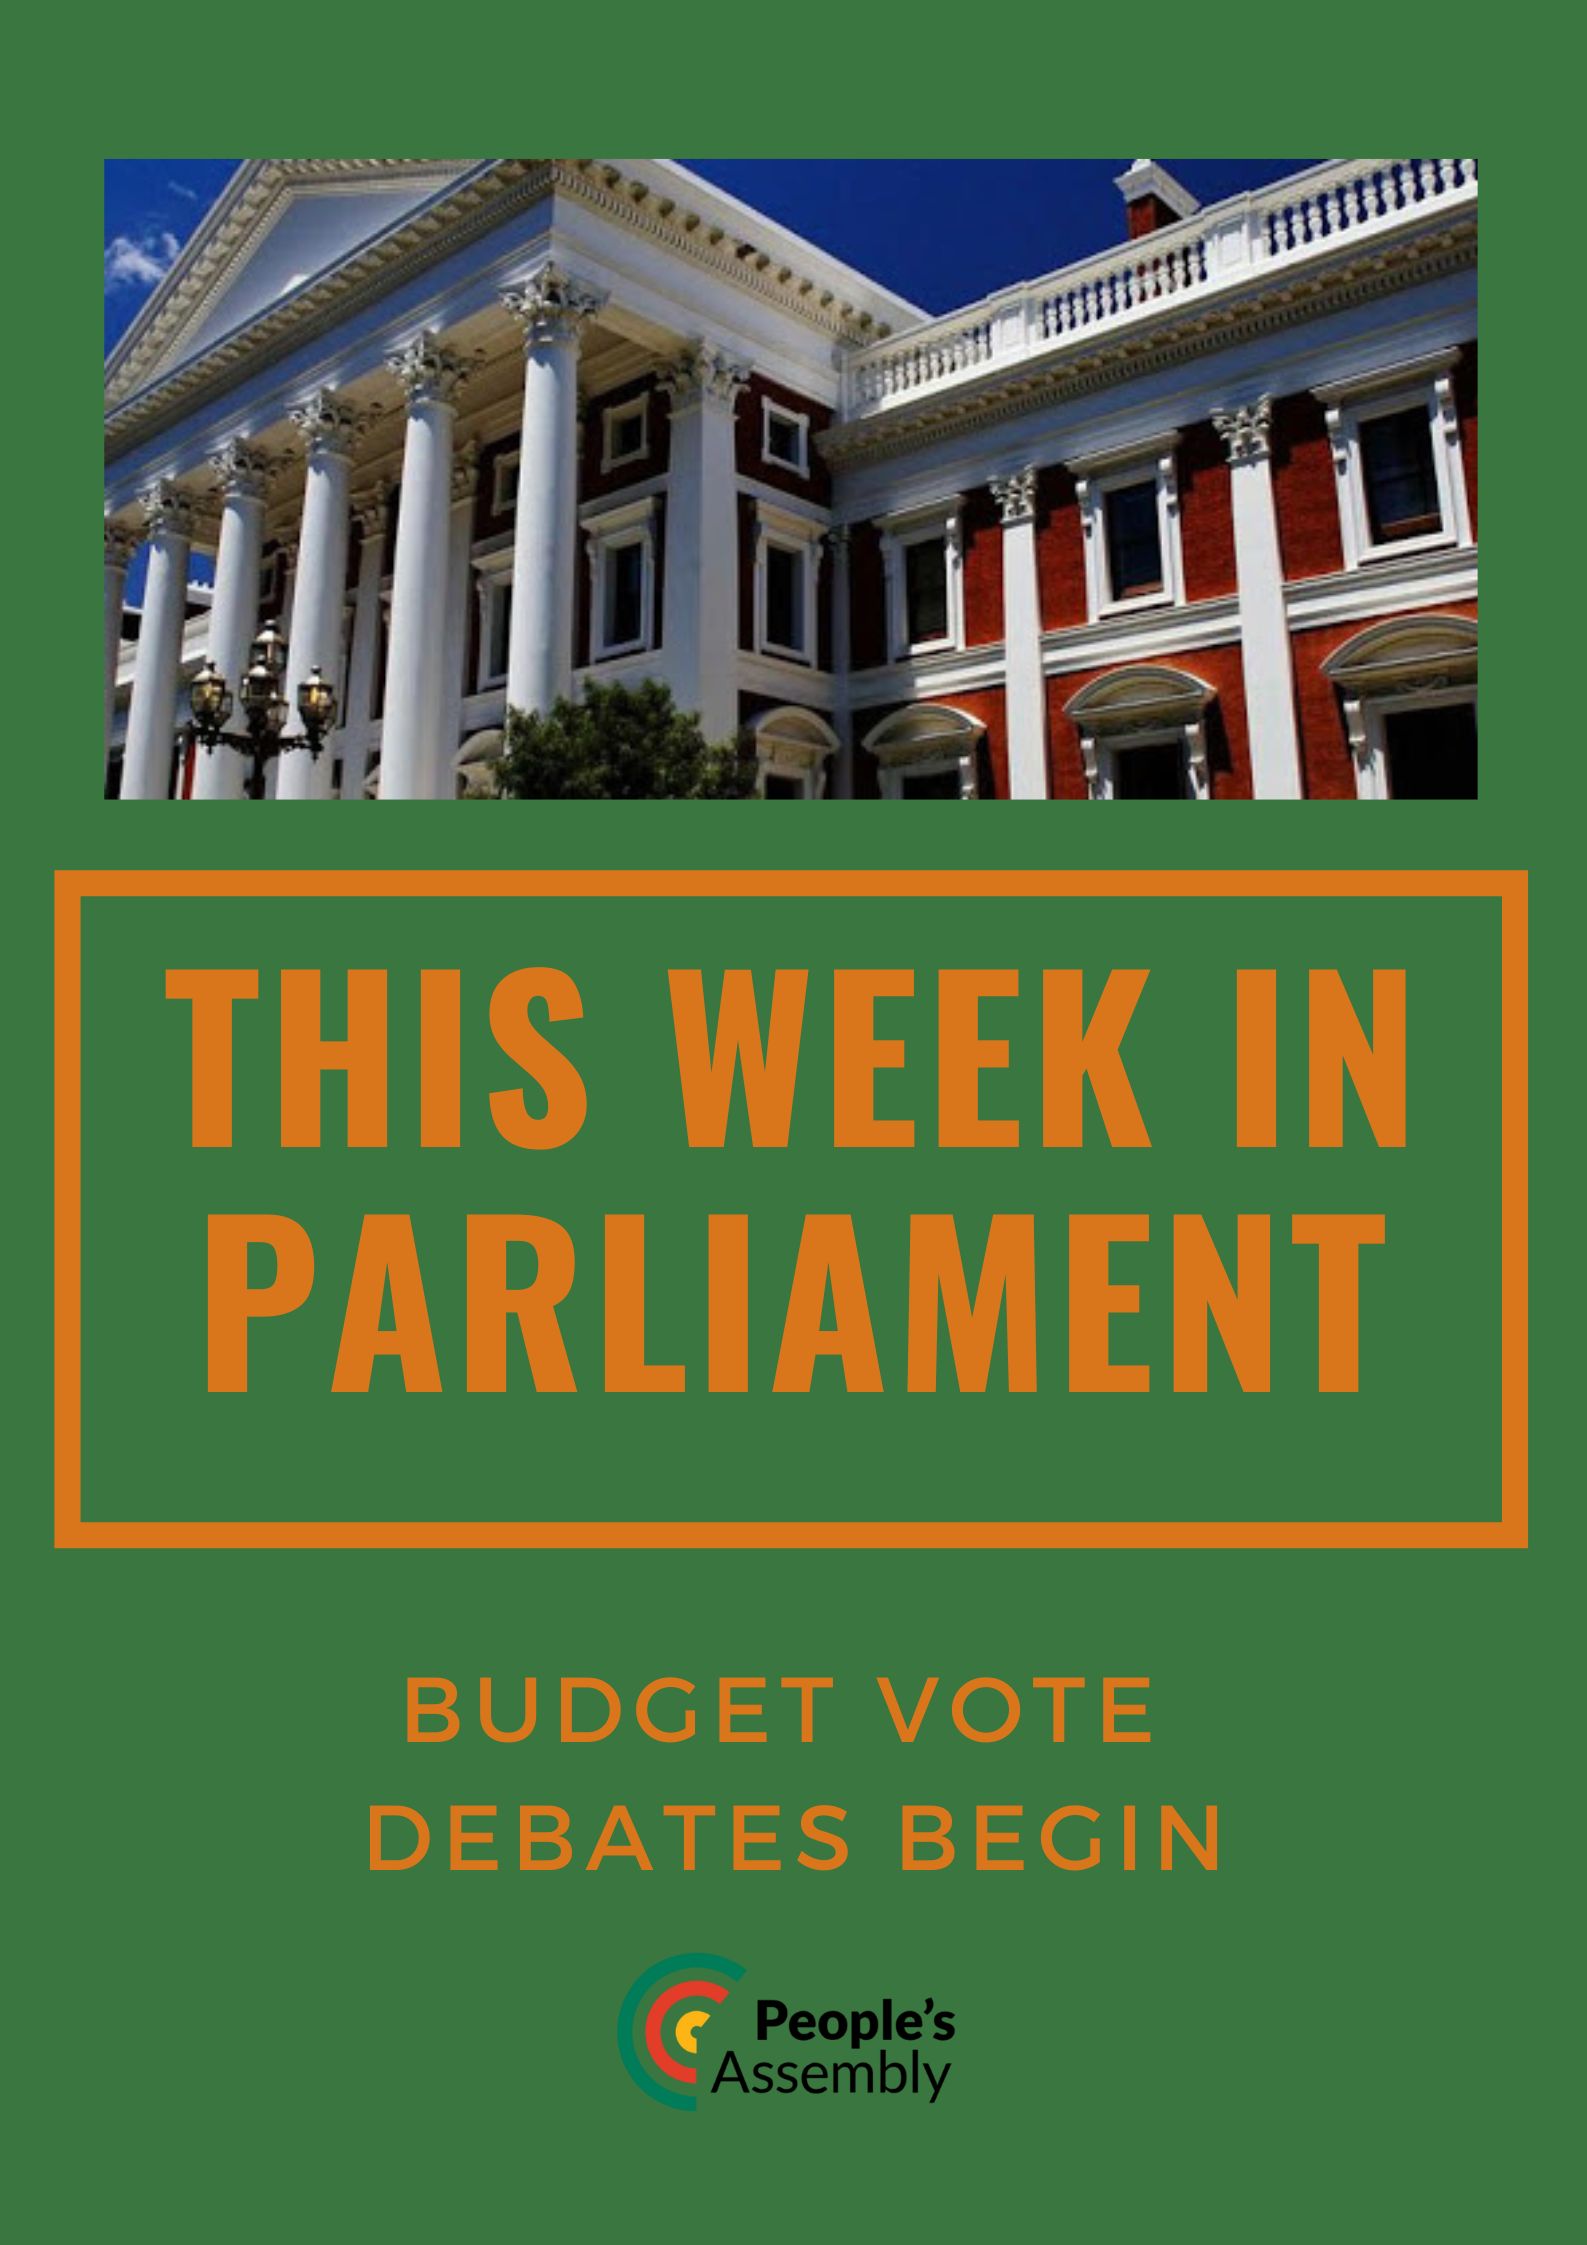 The Week Ahead: Budget Vote Debates Begin